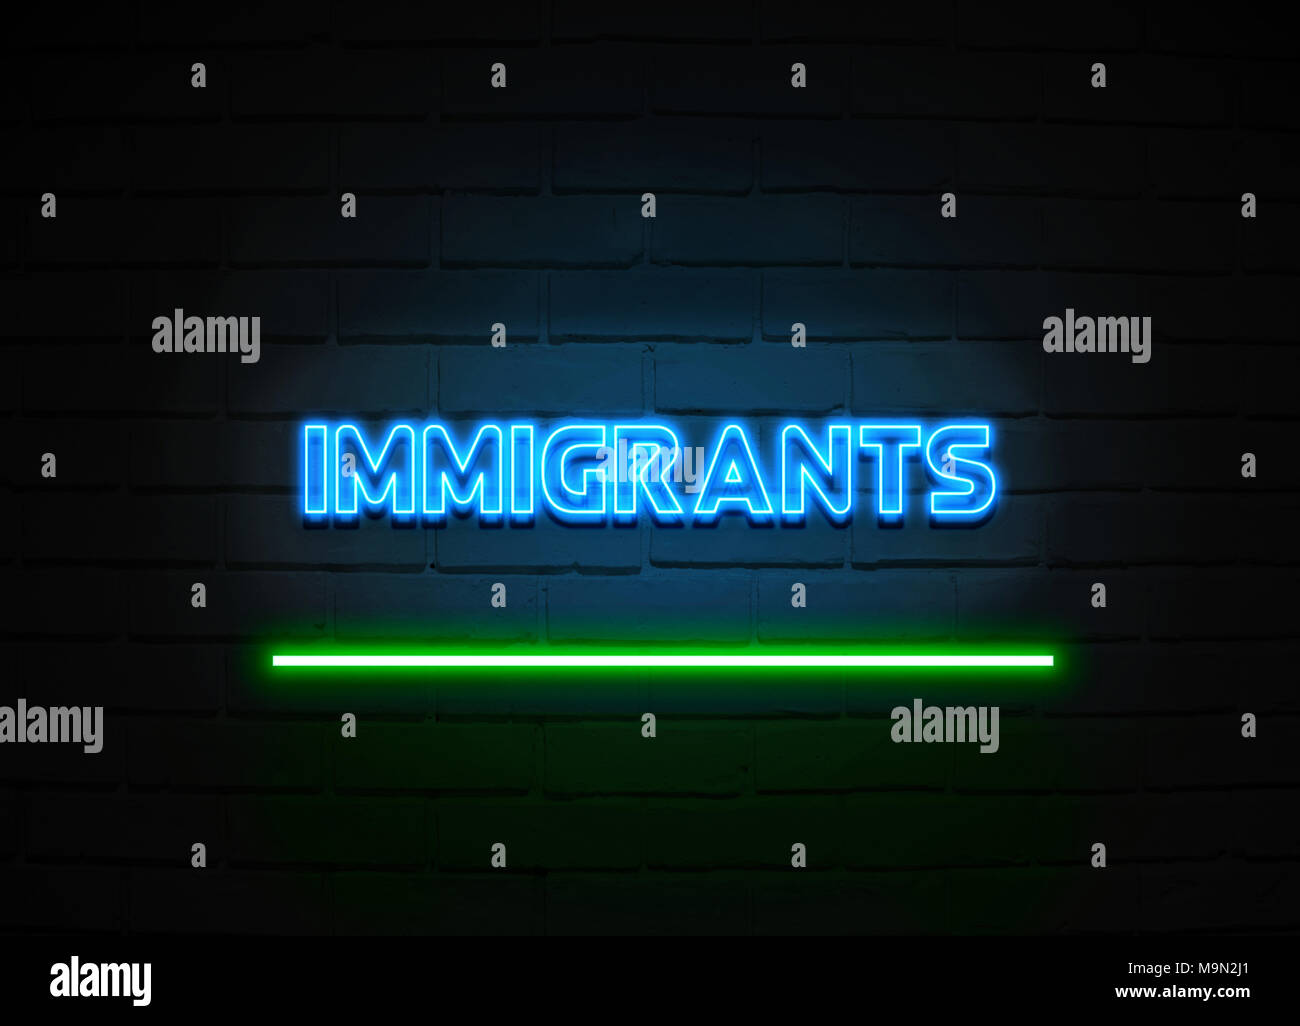 Einwanderer Leuchtreklame - glühende Leuchtreklame auf brickwall Wand - 3D-Royalty Free Stock Illustration dargestellt. Stockfoto